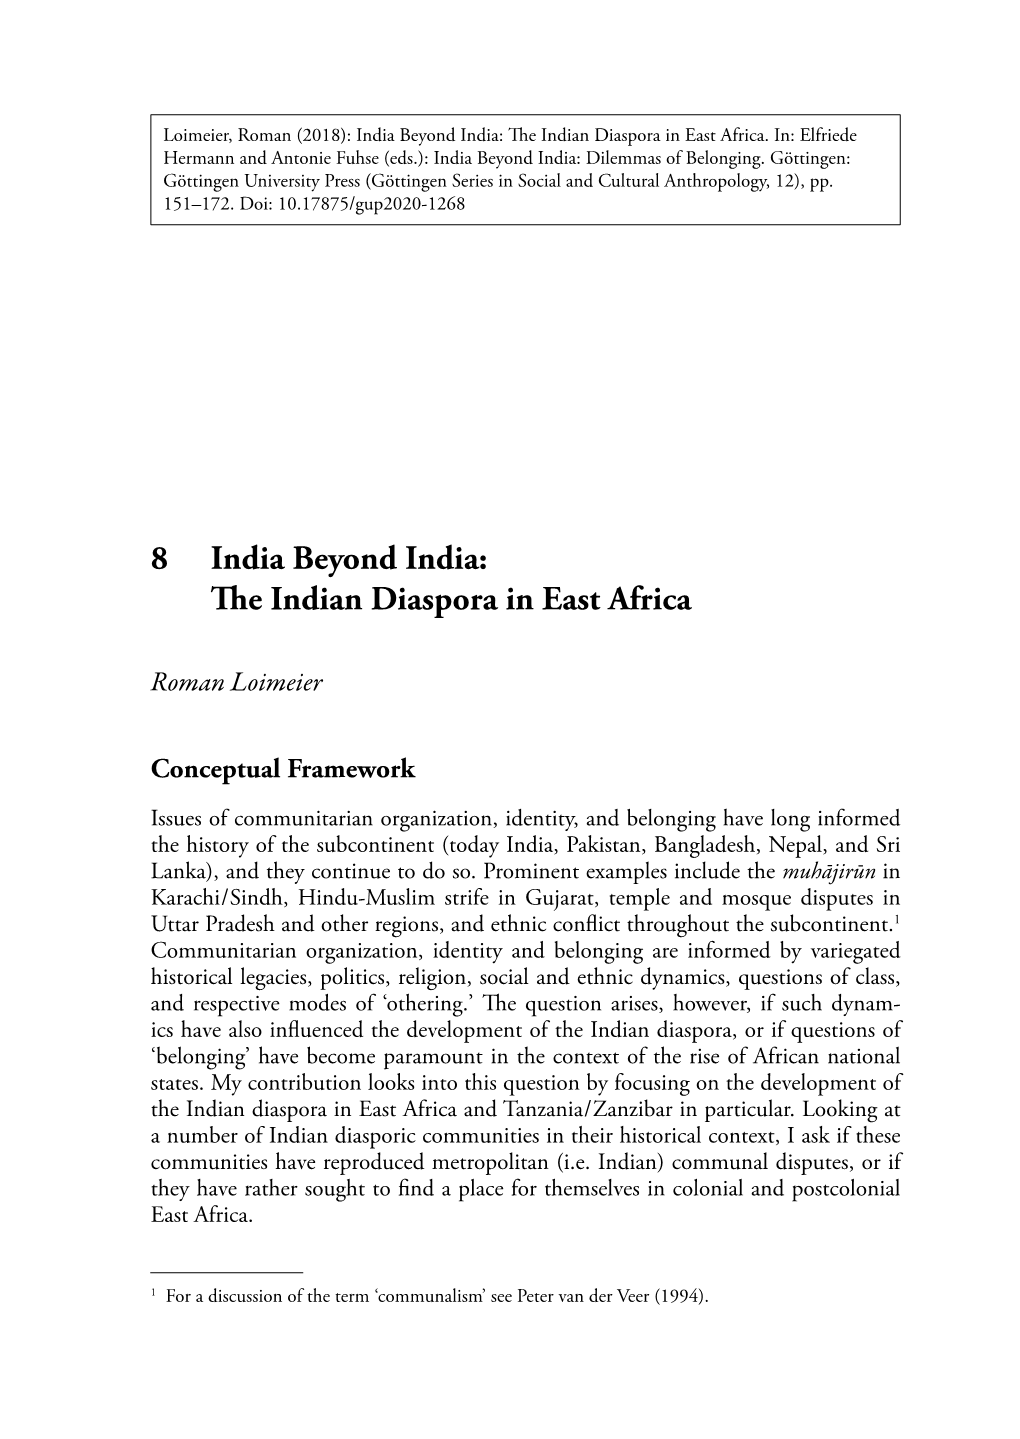 8 the Indian Diaspora in East Africa